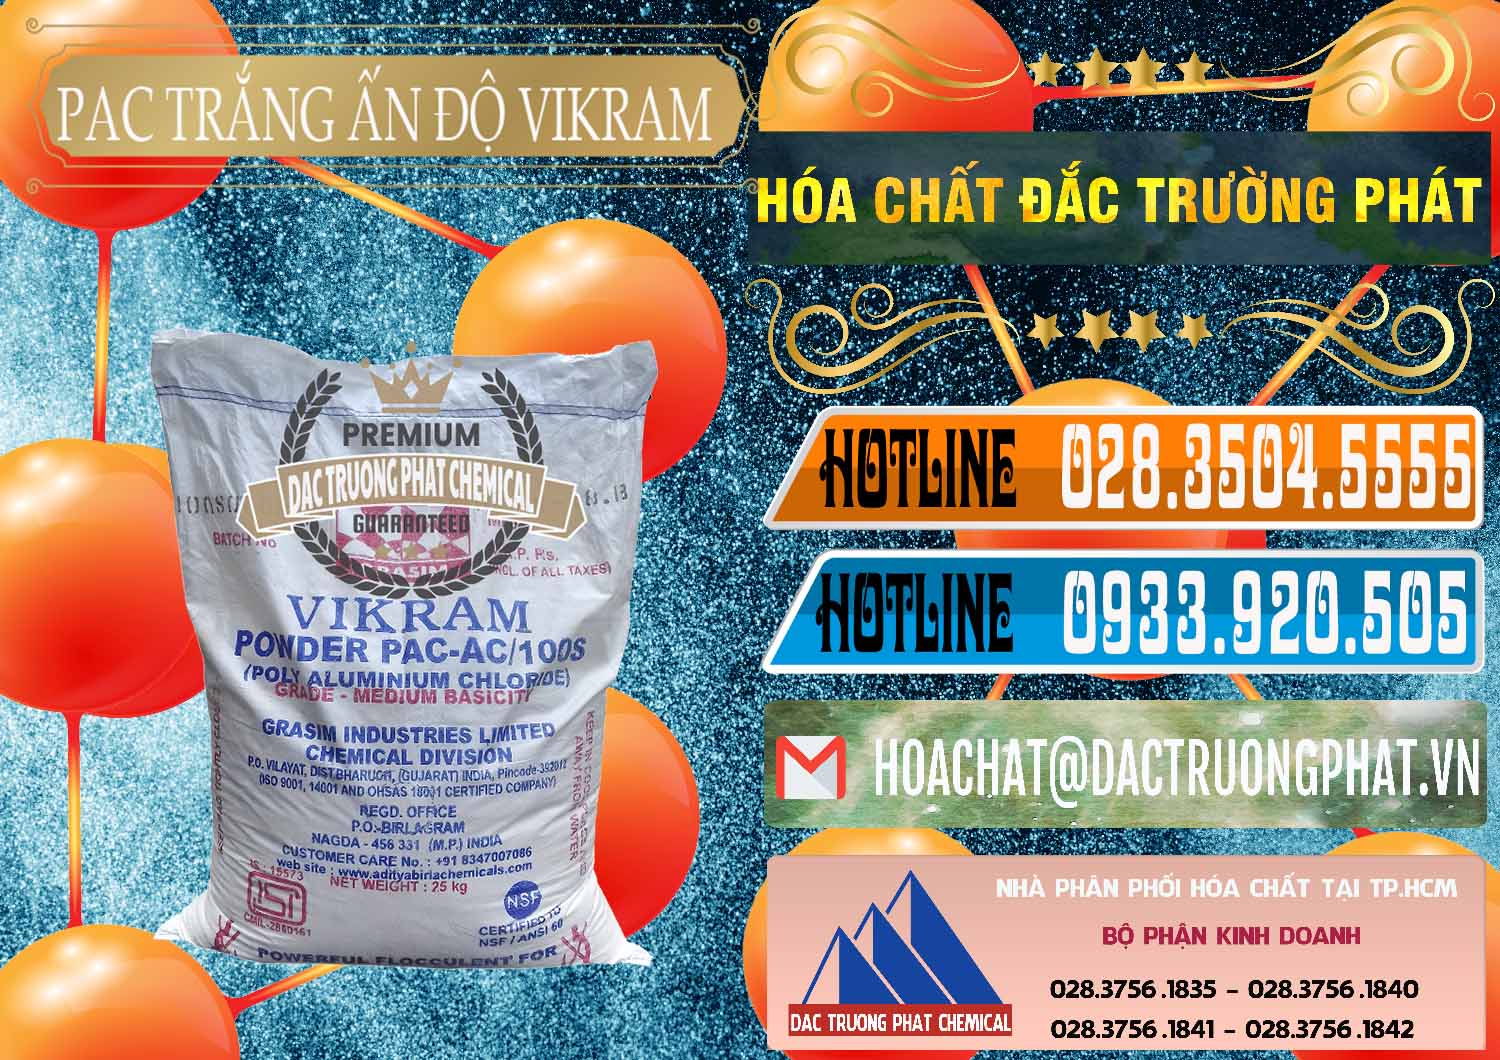 Chuyên bán & cung cấp PAC - Polyaluminium Chloride Ấn Độ India Vikram - 0120 - Chuyên cung cấp _ nhập khẩu hóa chất tại TP.HCM - stmp.net